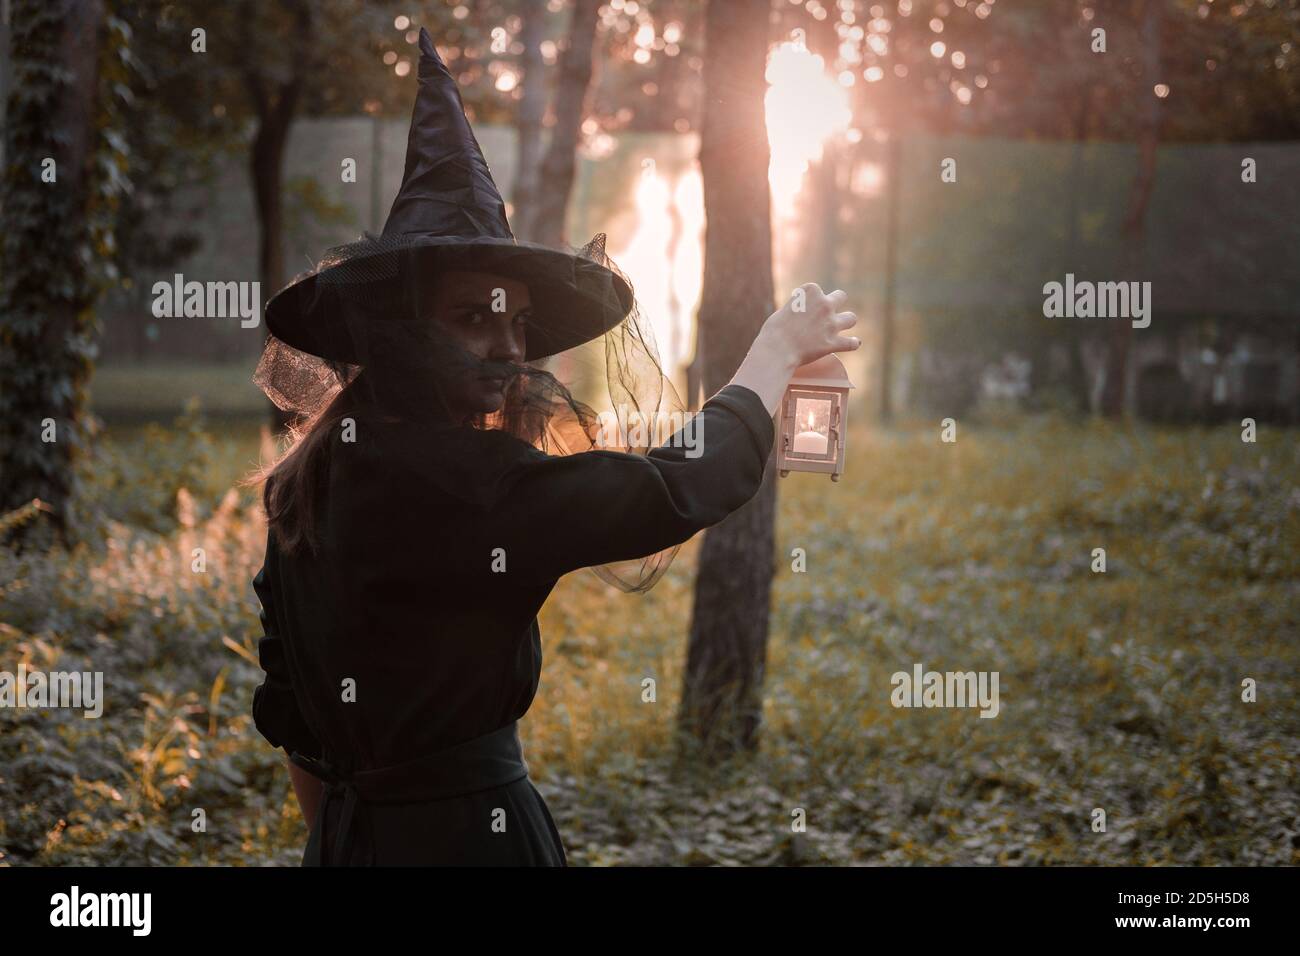 Giovane donna in abito scuro e cappello di strega tiene lanterna con candele in mano e illumina la foresta. Costume da festa di Halloween. Parco con autum Foto Stock